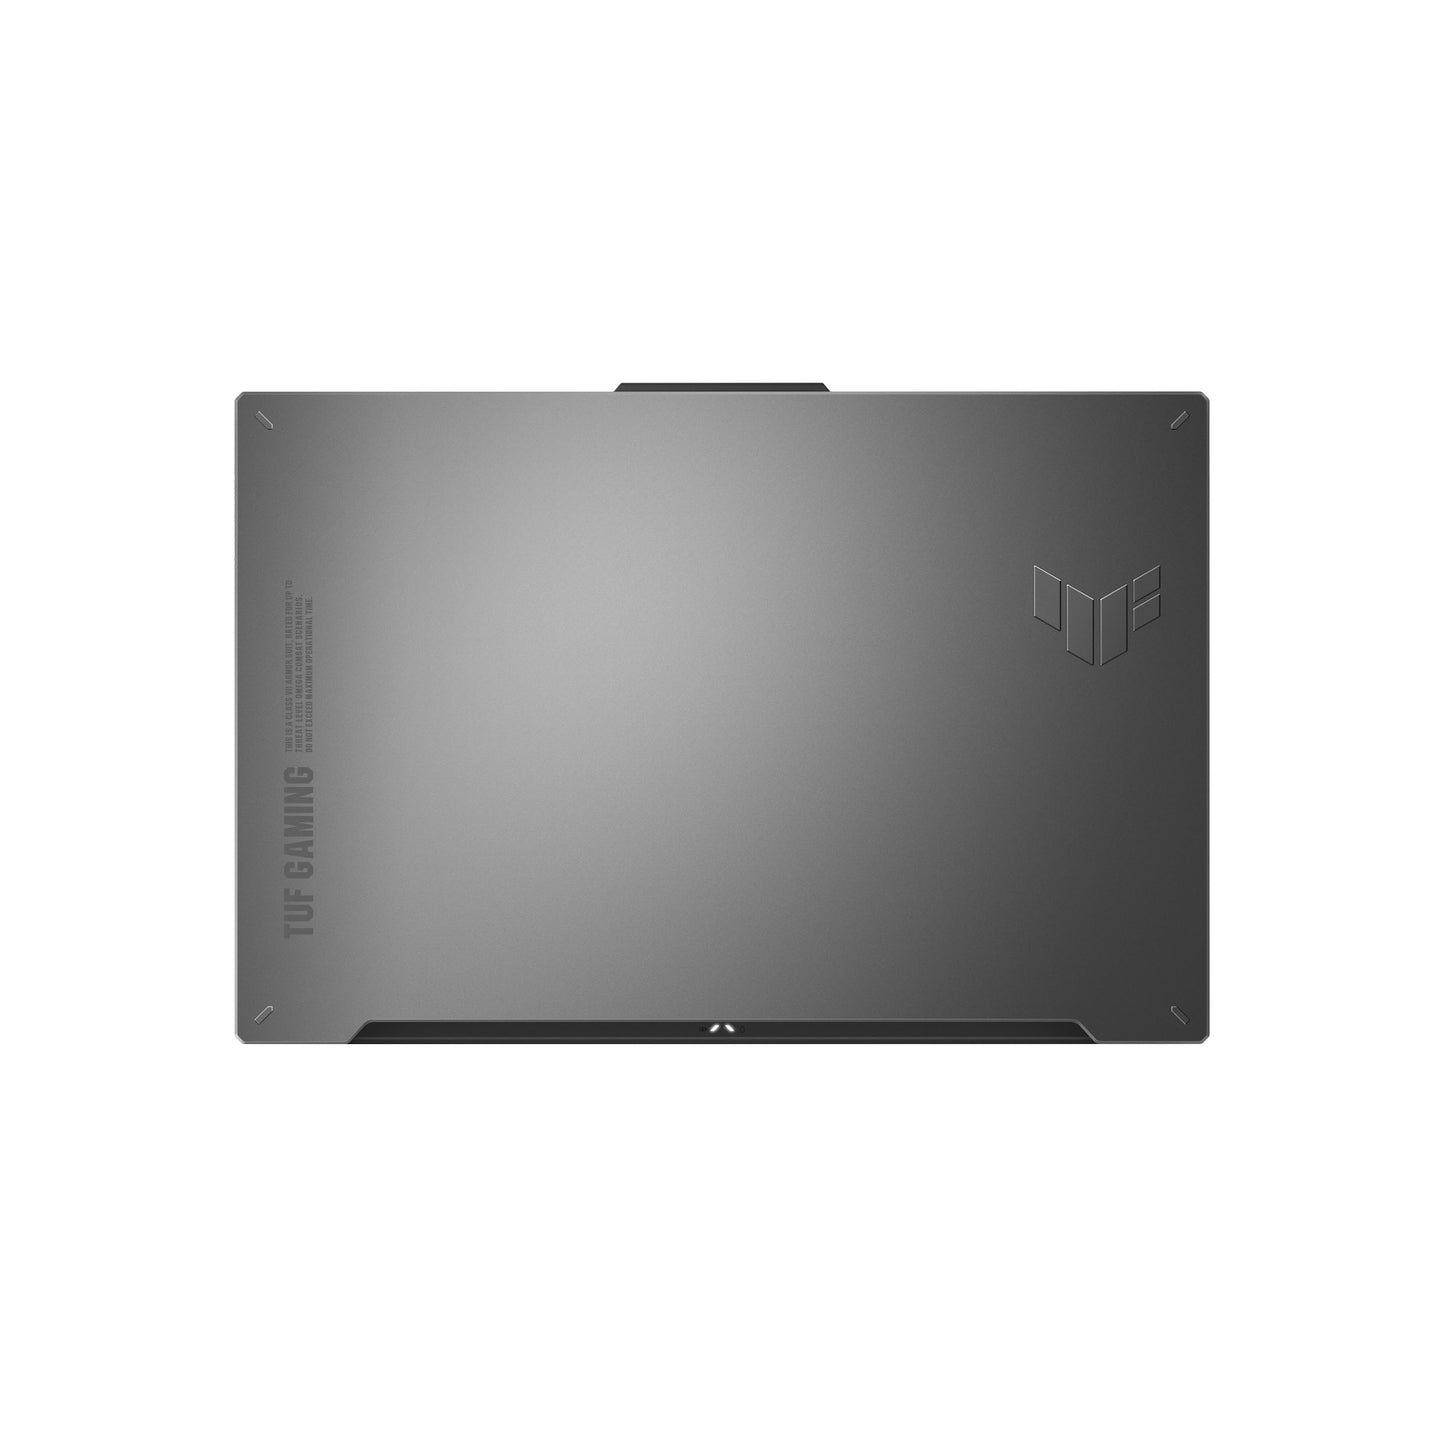 ASUS TUF Gaming A17 (2023) Gaming Laptop, FA707NV-ES74, Black